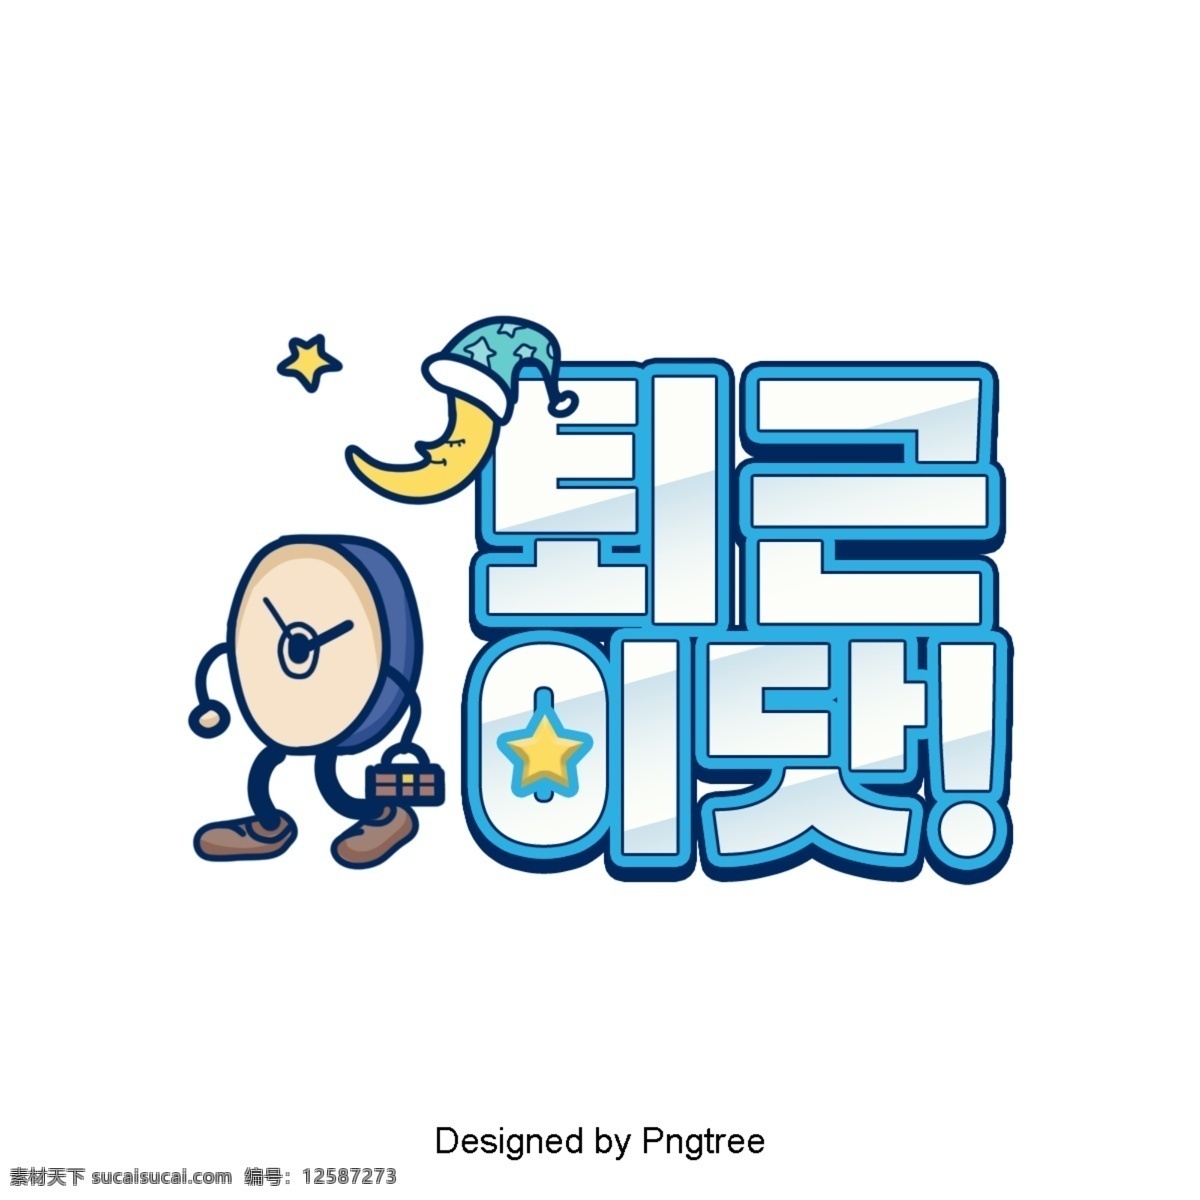 韩国 卡通 工作 银 业务 现场 然后 字体 月 提醒人们 明星 帽子 白色 浅蓝